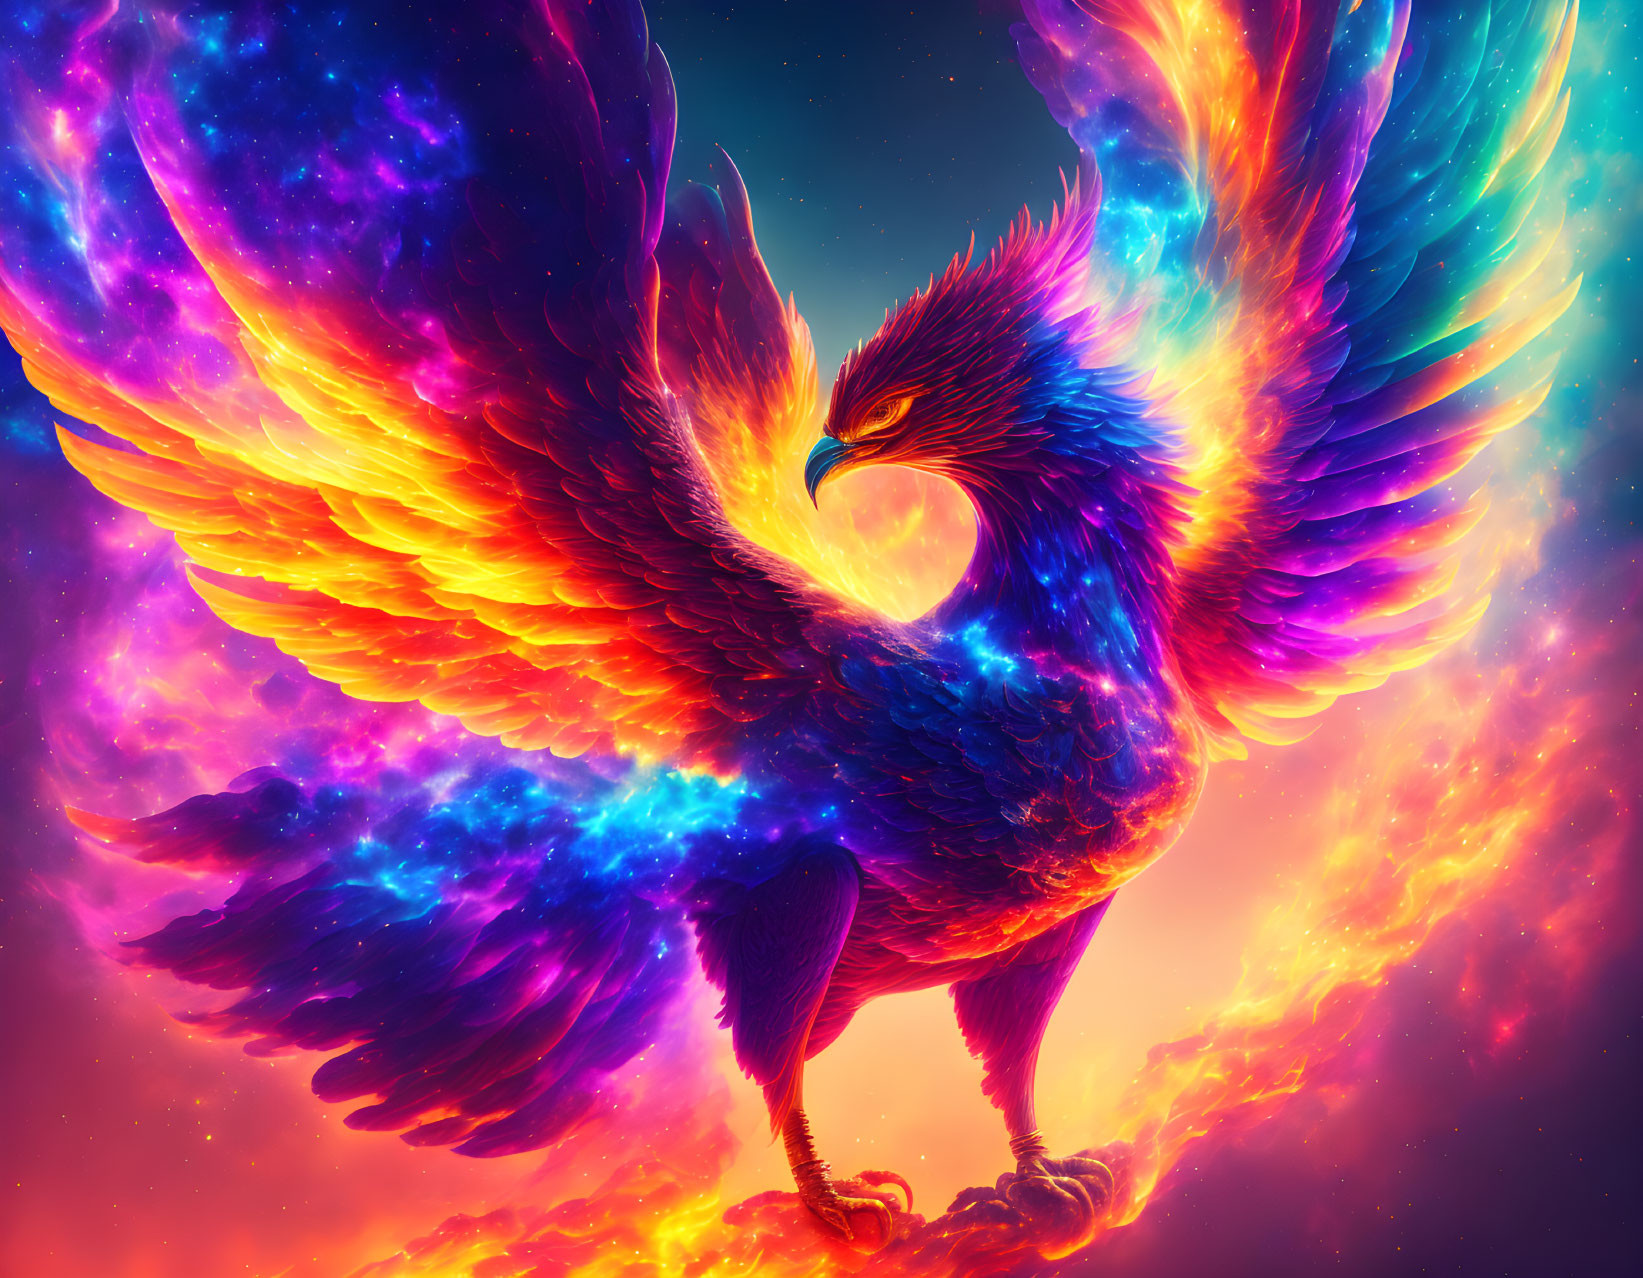 Phoenix of the Cosmos